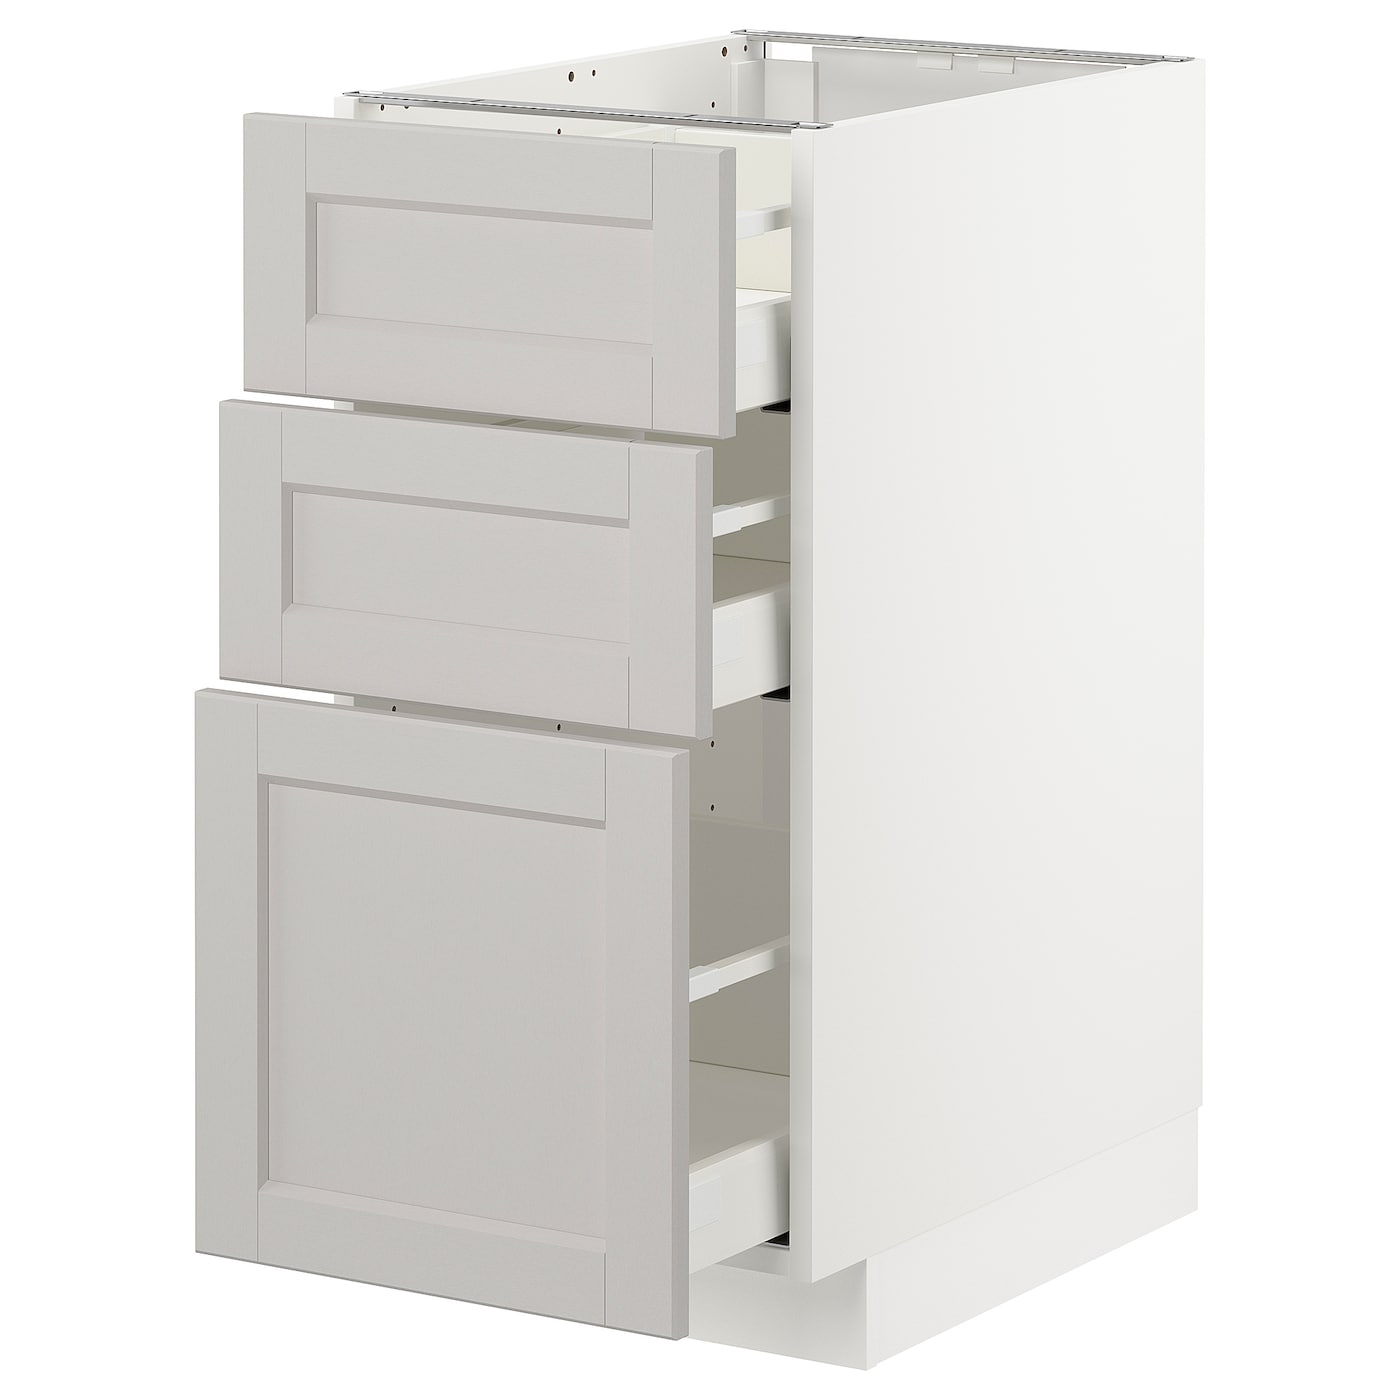 Напольный шкаф - IKEA METOD MAXIMERA, 88x62x40см, белый/светло-серый, МЕТОД МАКСИМЕРА ИКЕА